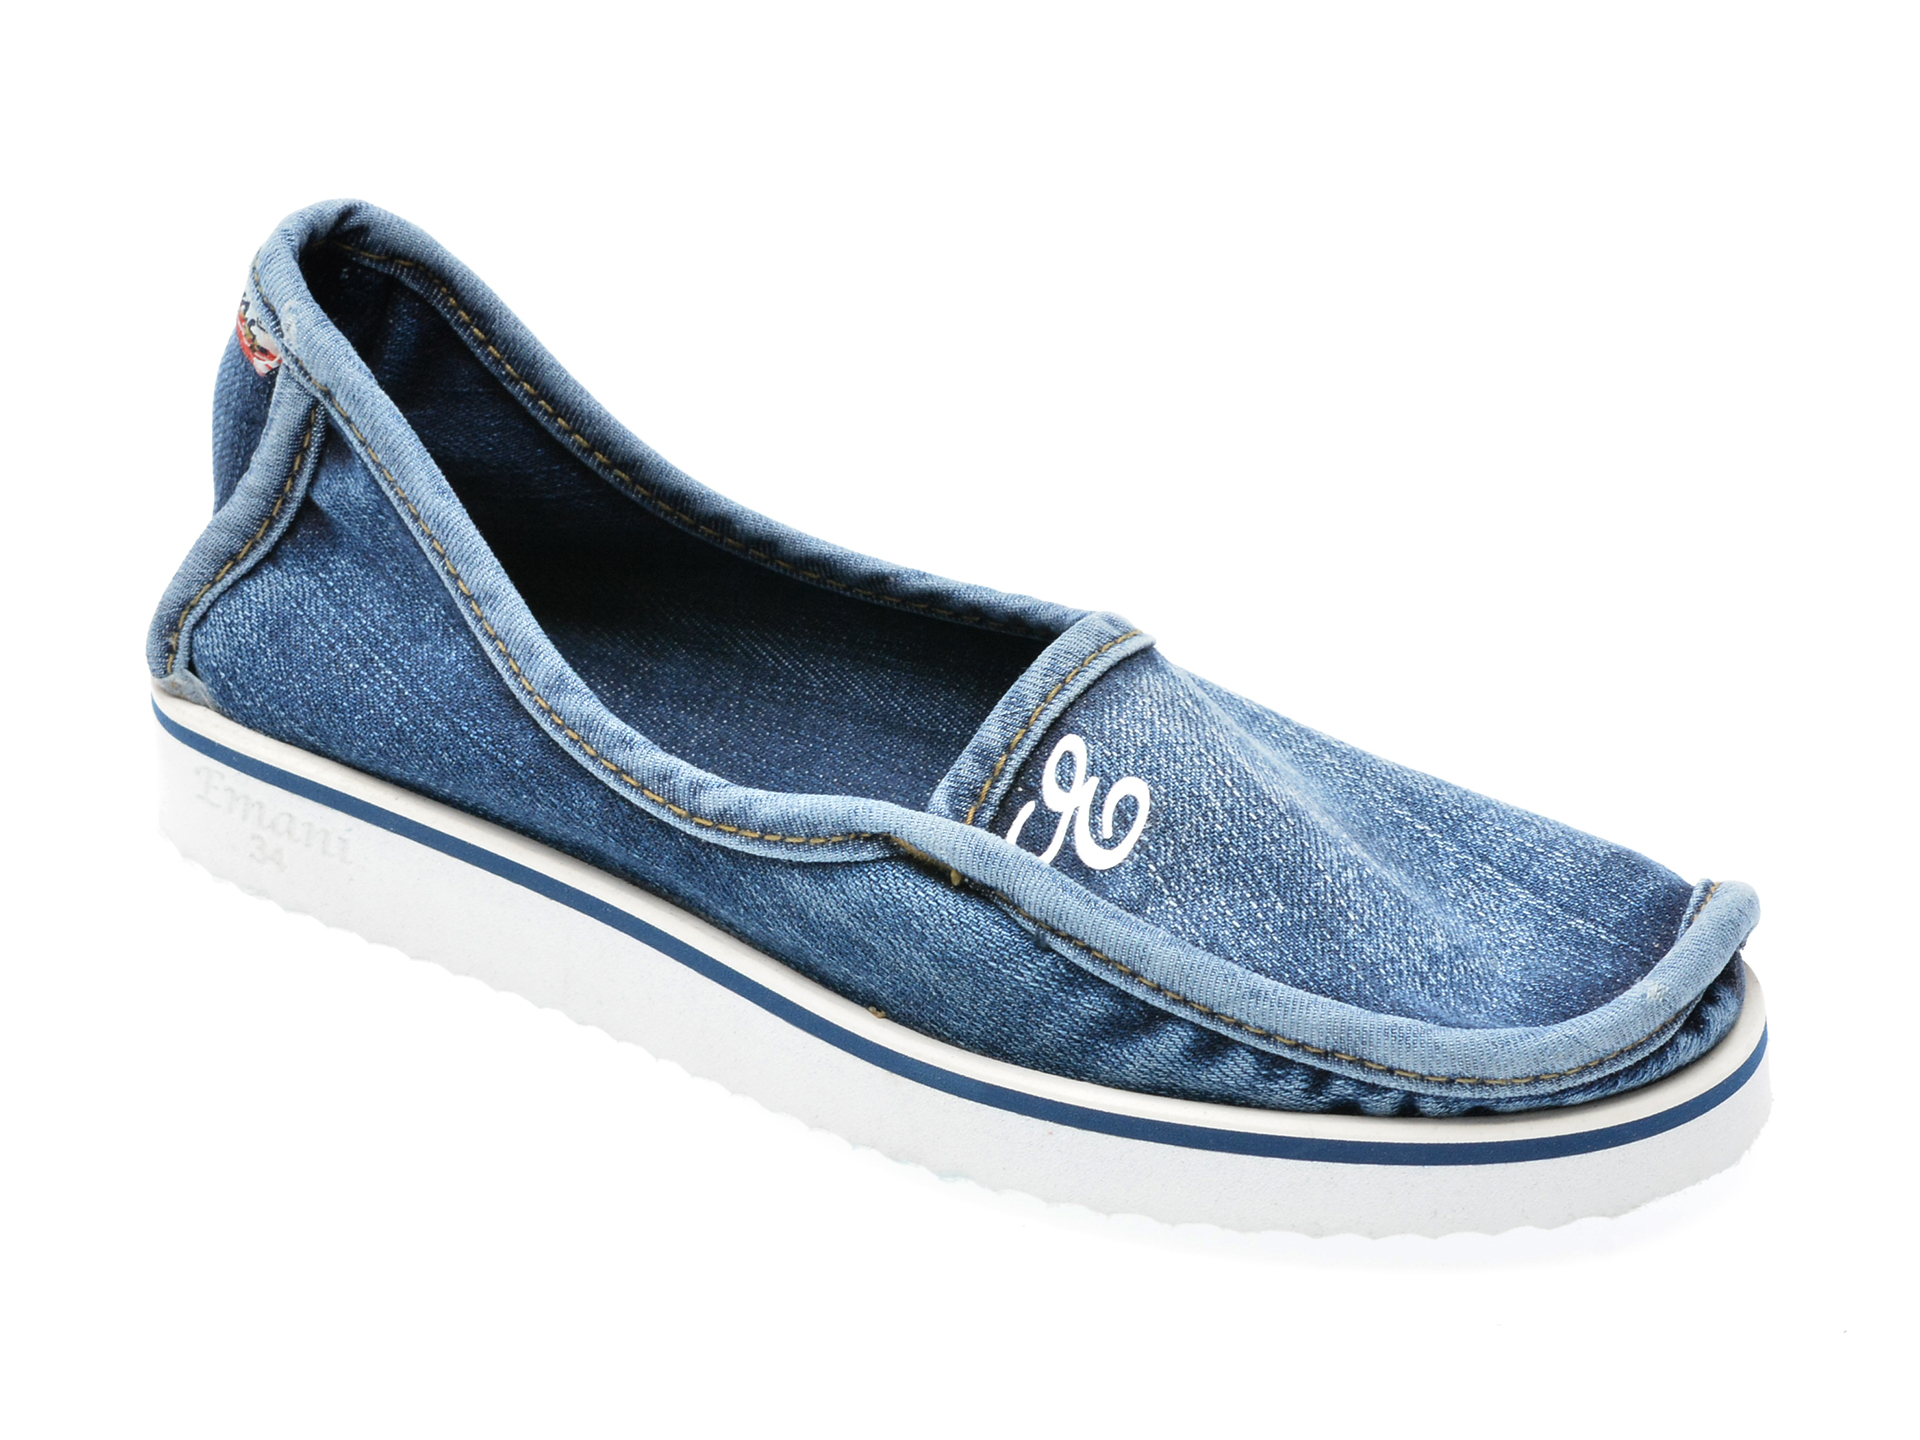 Pantofi EMANI albastri, 20394, din material textil /copii/incaltaminte